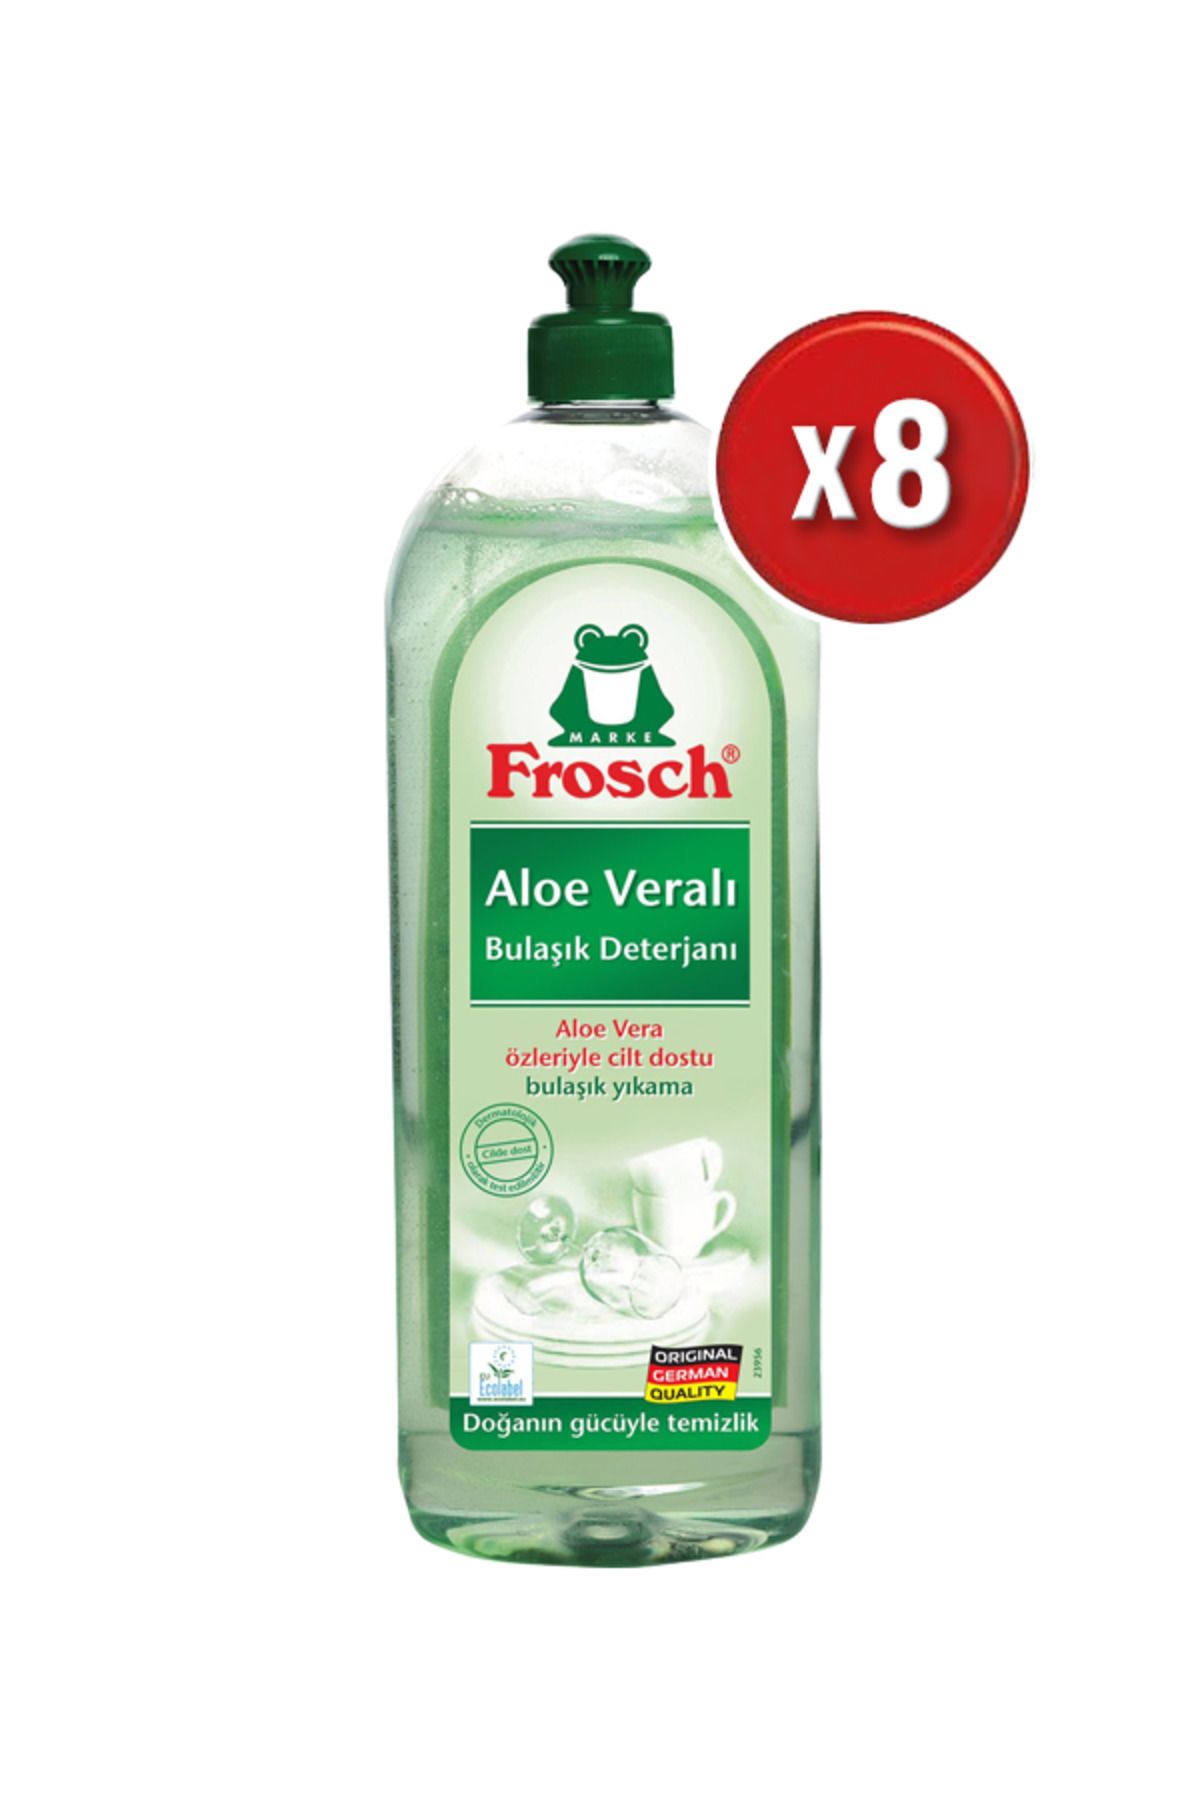 Frosch Bulaşık Deterjanı Aloe Vera 750 Ml x 8 adet (1 koli)